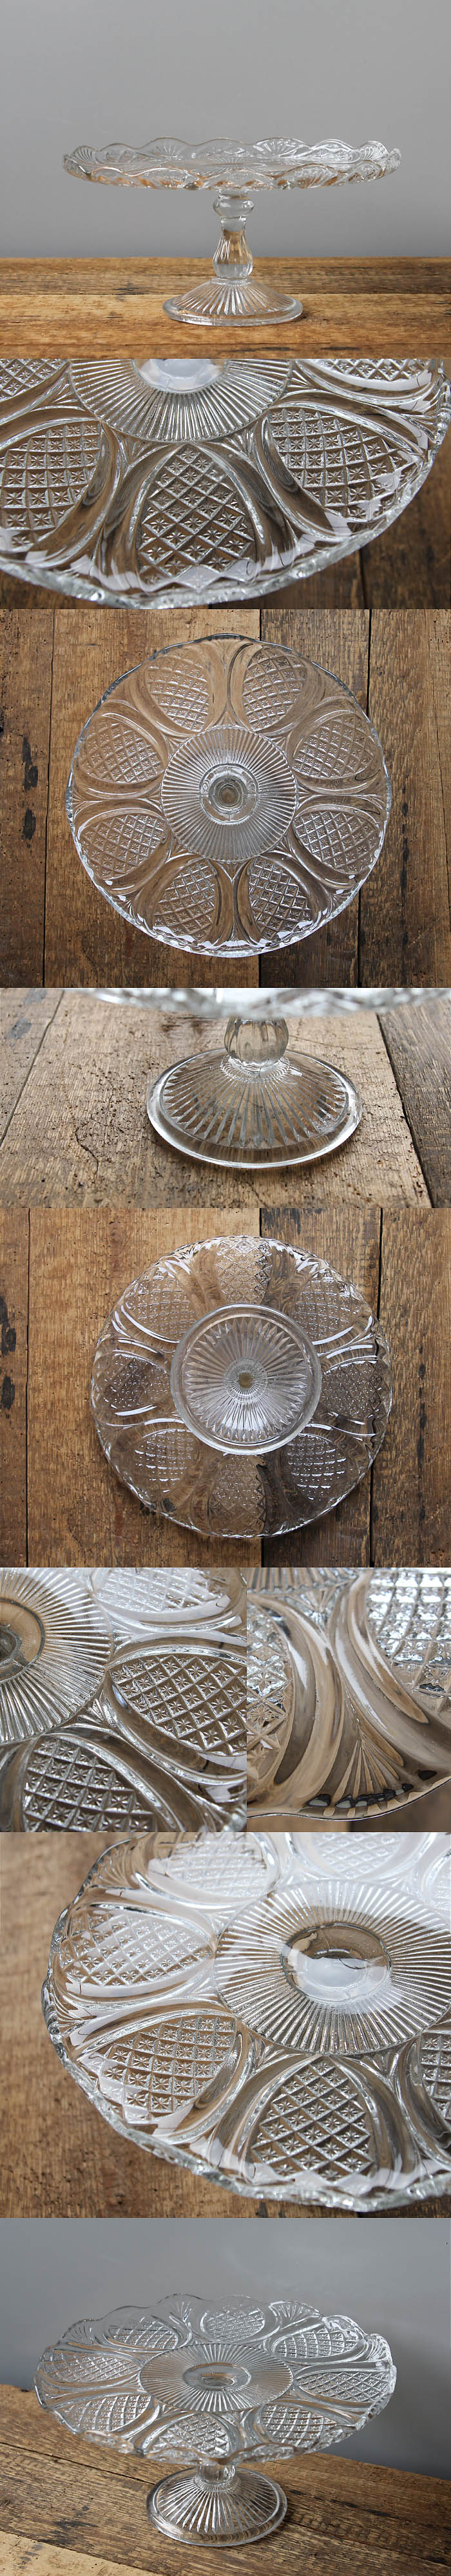 イギリス アンティーク ガラスケーキスタンド コンポート皿 食器 インテリア雑貨「プレスガラス」V-905